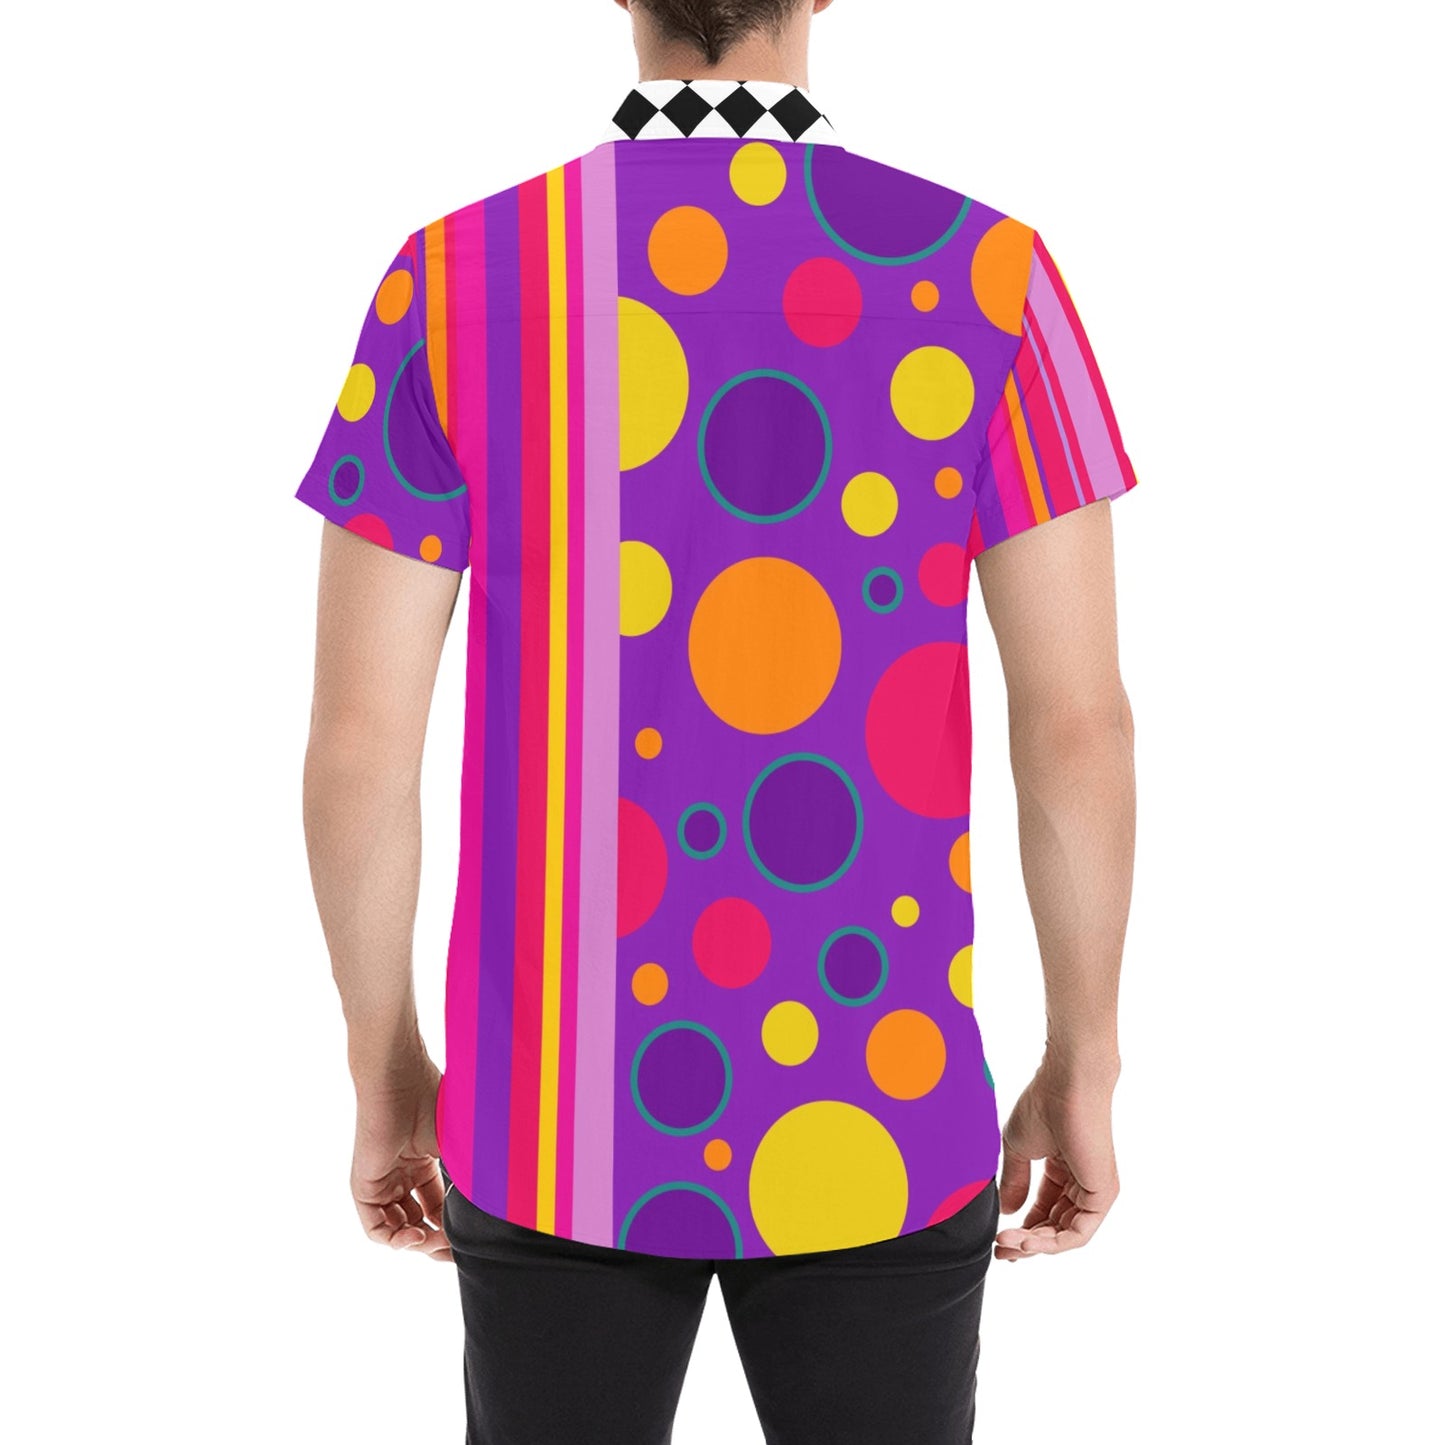 Clowncore Fashion Classic Clown Shirt 